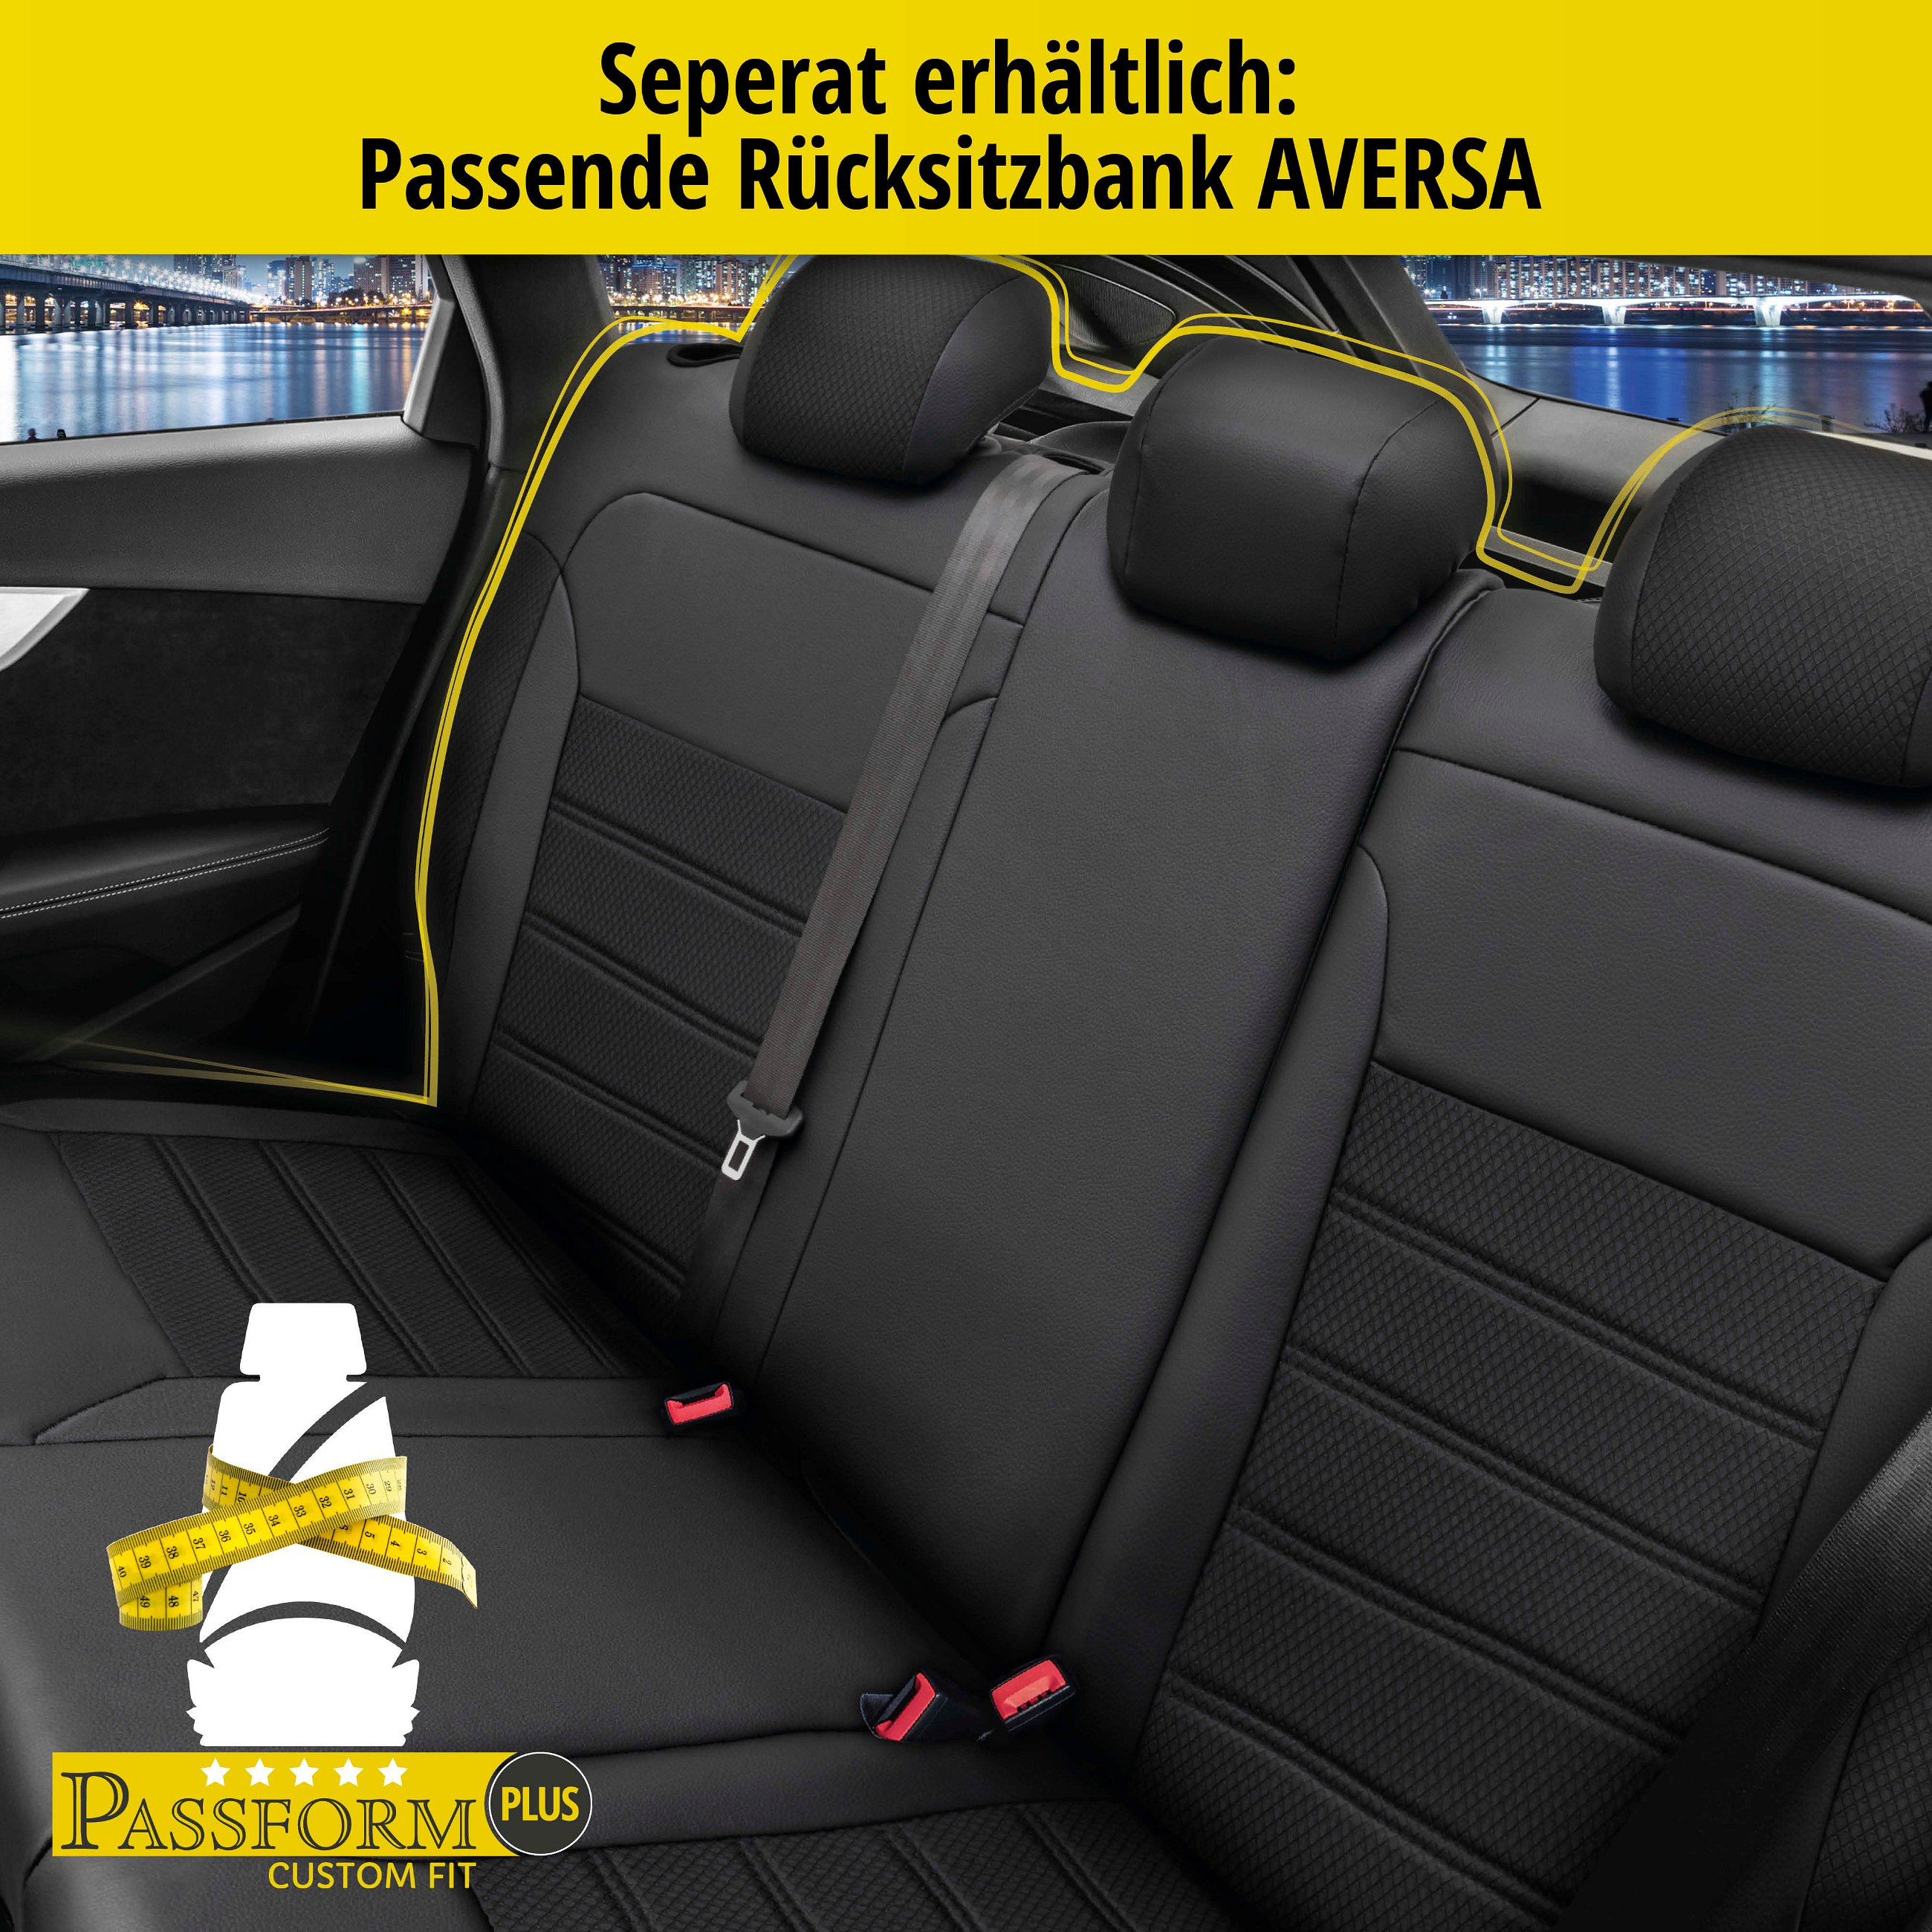 Passform Sitzbezug Aversa für Audi A3 2012-Heute, 2 Einzelsitzbezüge für Normalsitze